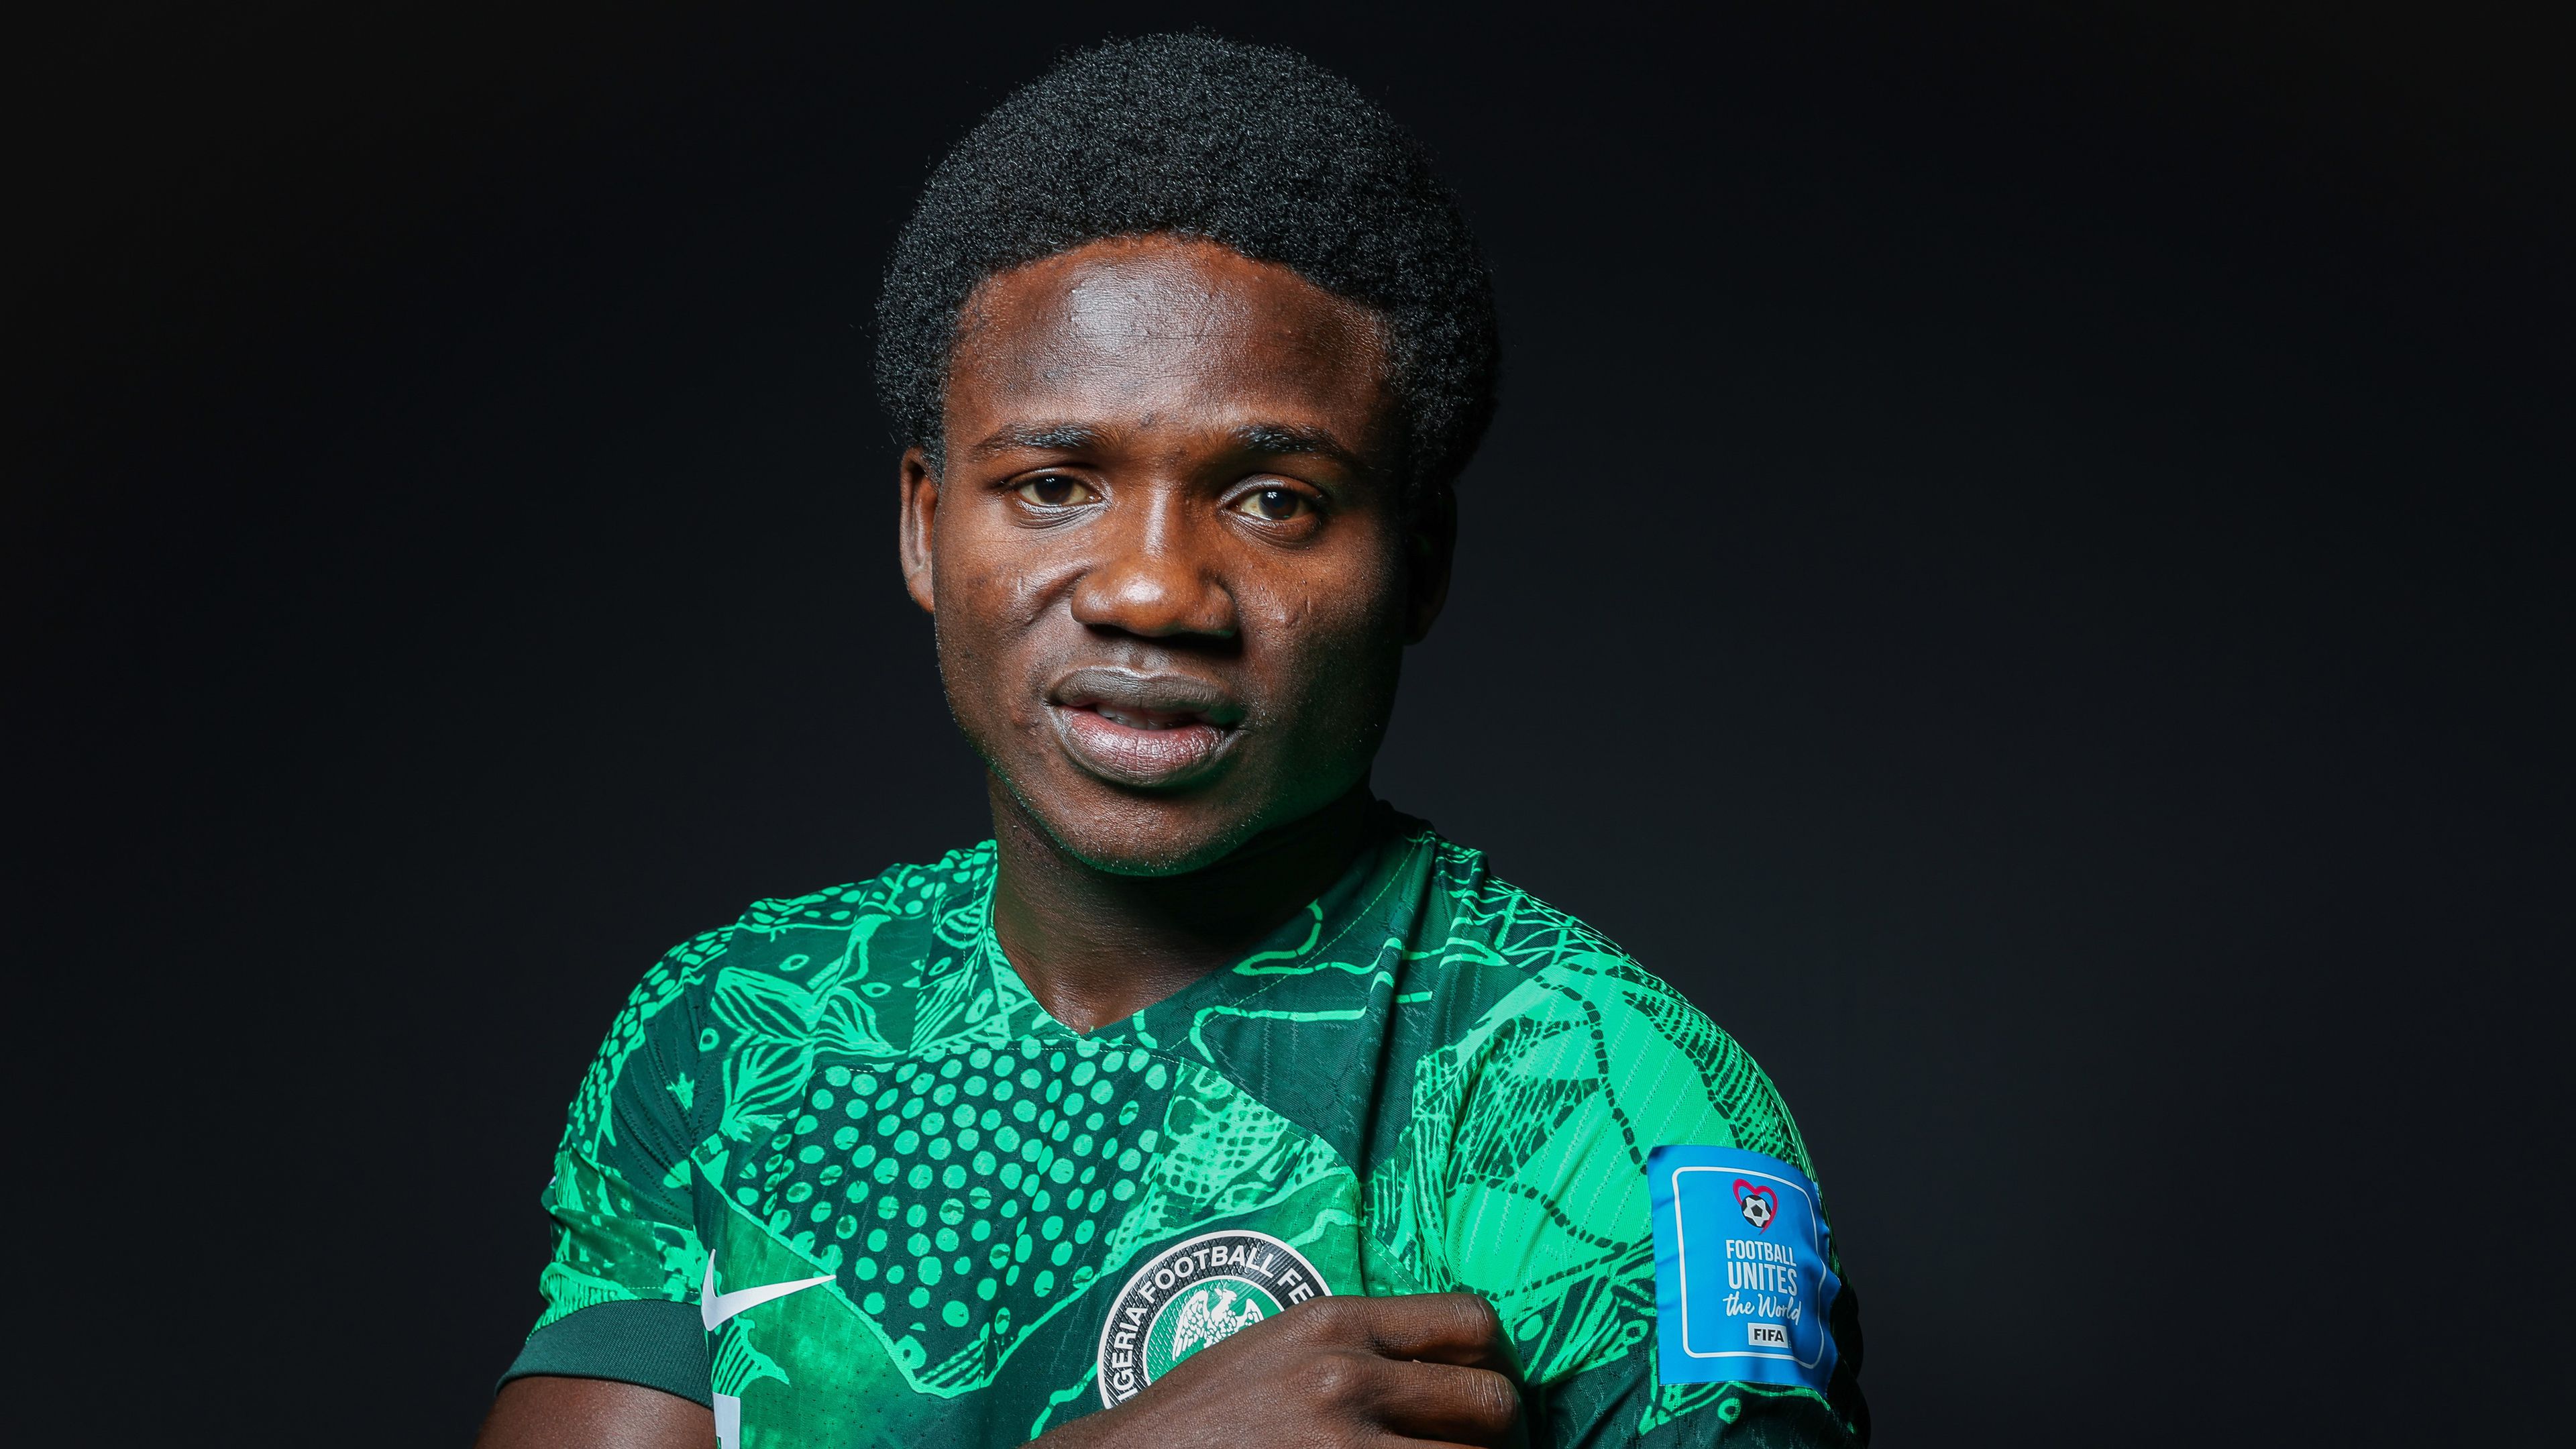 Újabb furcsaság, hazudott klubjáról a nigériai válogatott csapatkapitánya